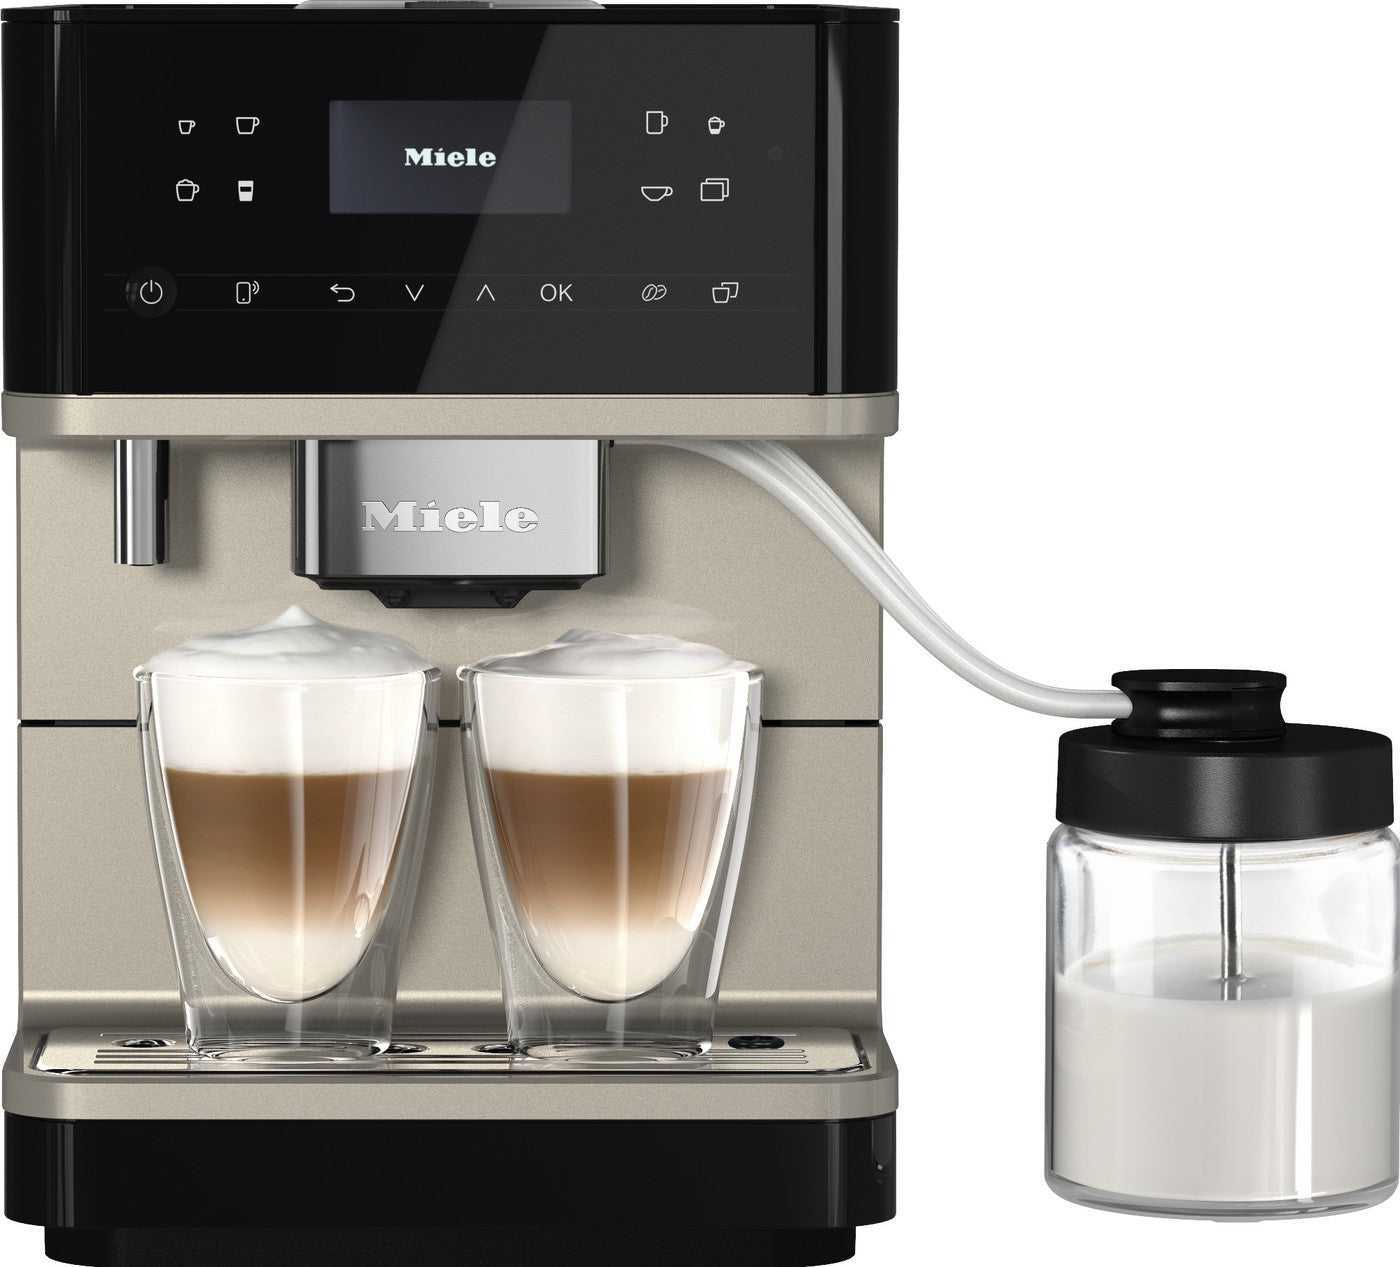 Trousse de nettoyage et de détartrage Urnex pour machines à café Nespresso